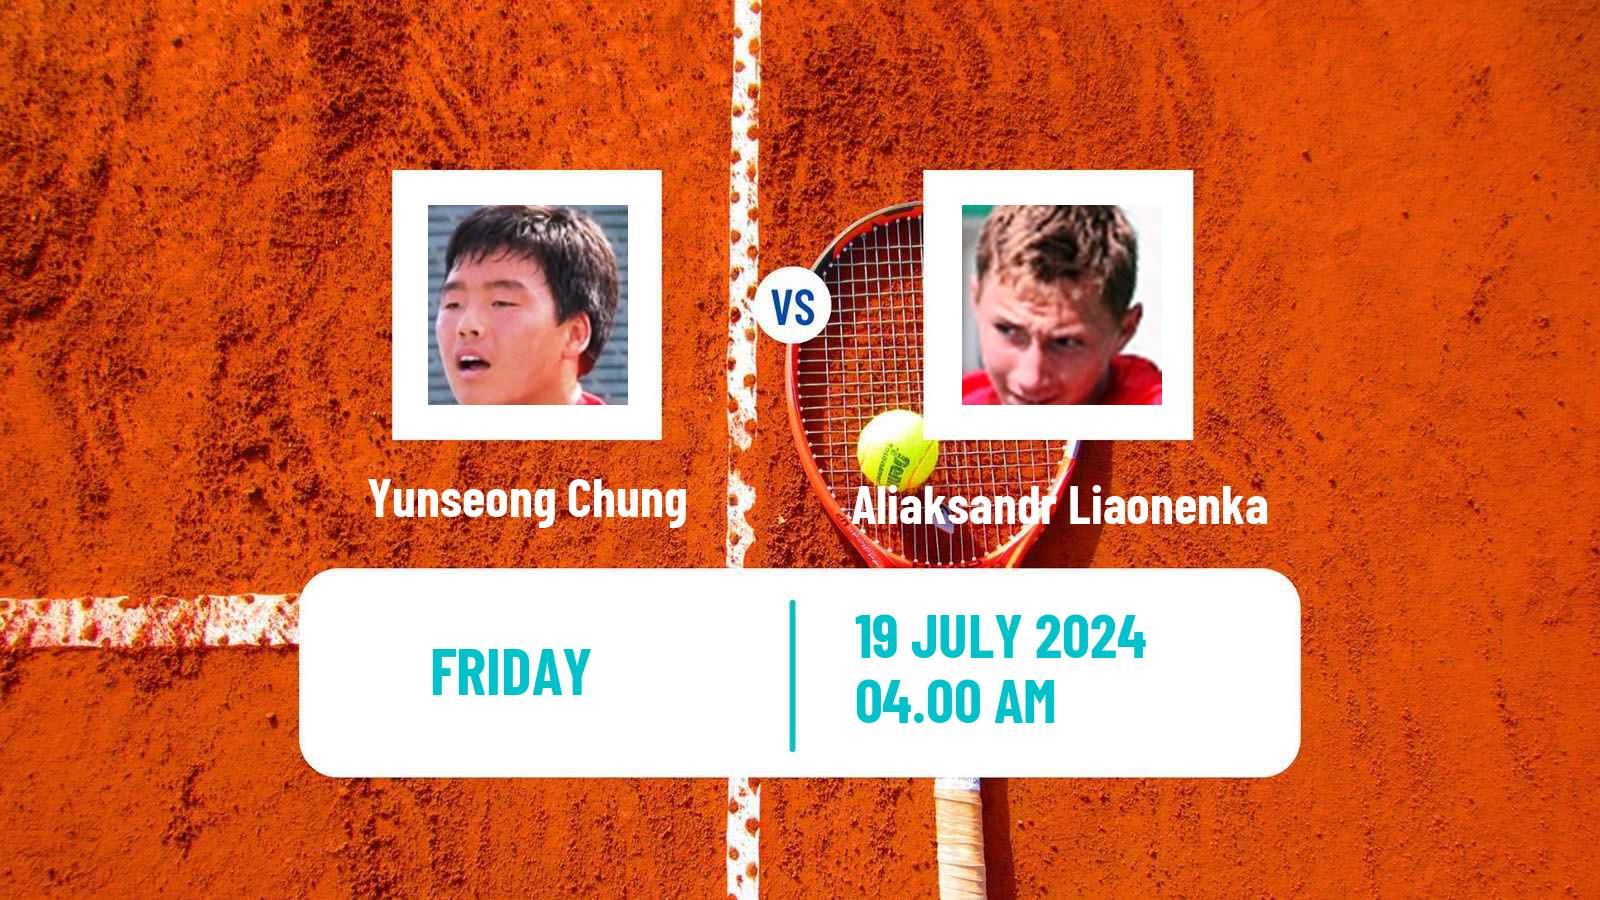 Tennis ITF M25 Tianjin 2 Men Yunseong Chung - Aliaksandr Liaonenka